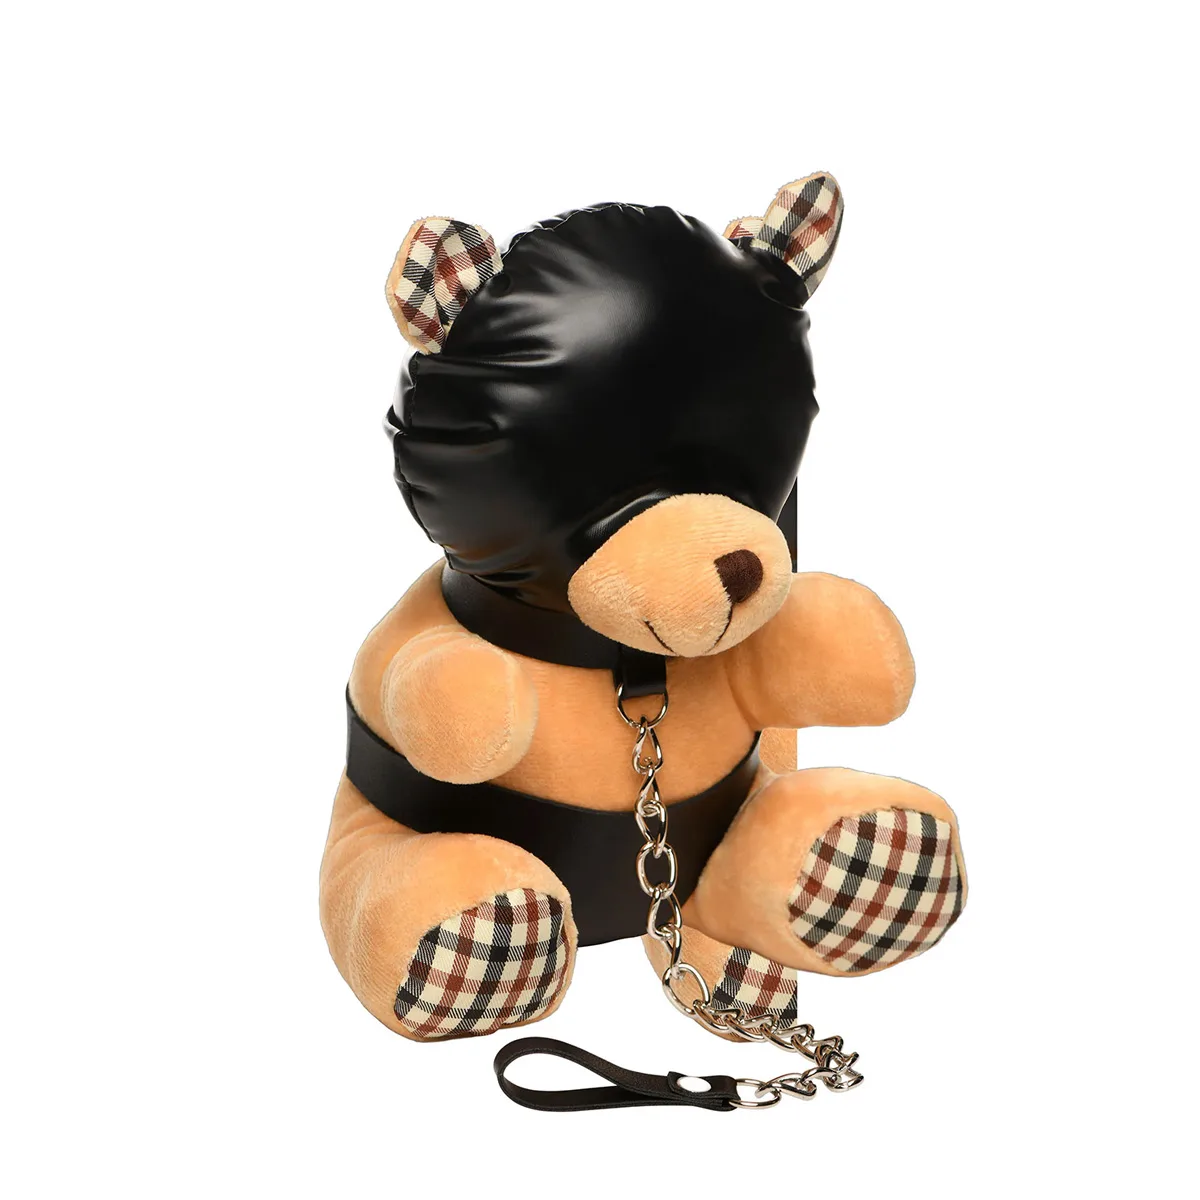 Hooded-Teddy-Bear-Plush-OPR-1070065-1